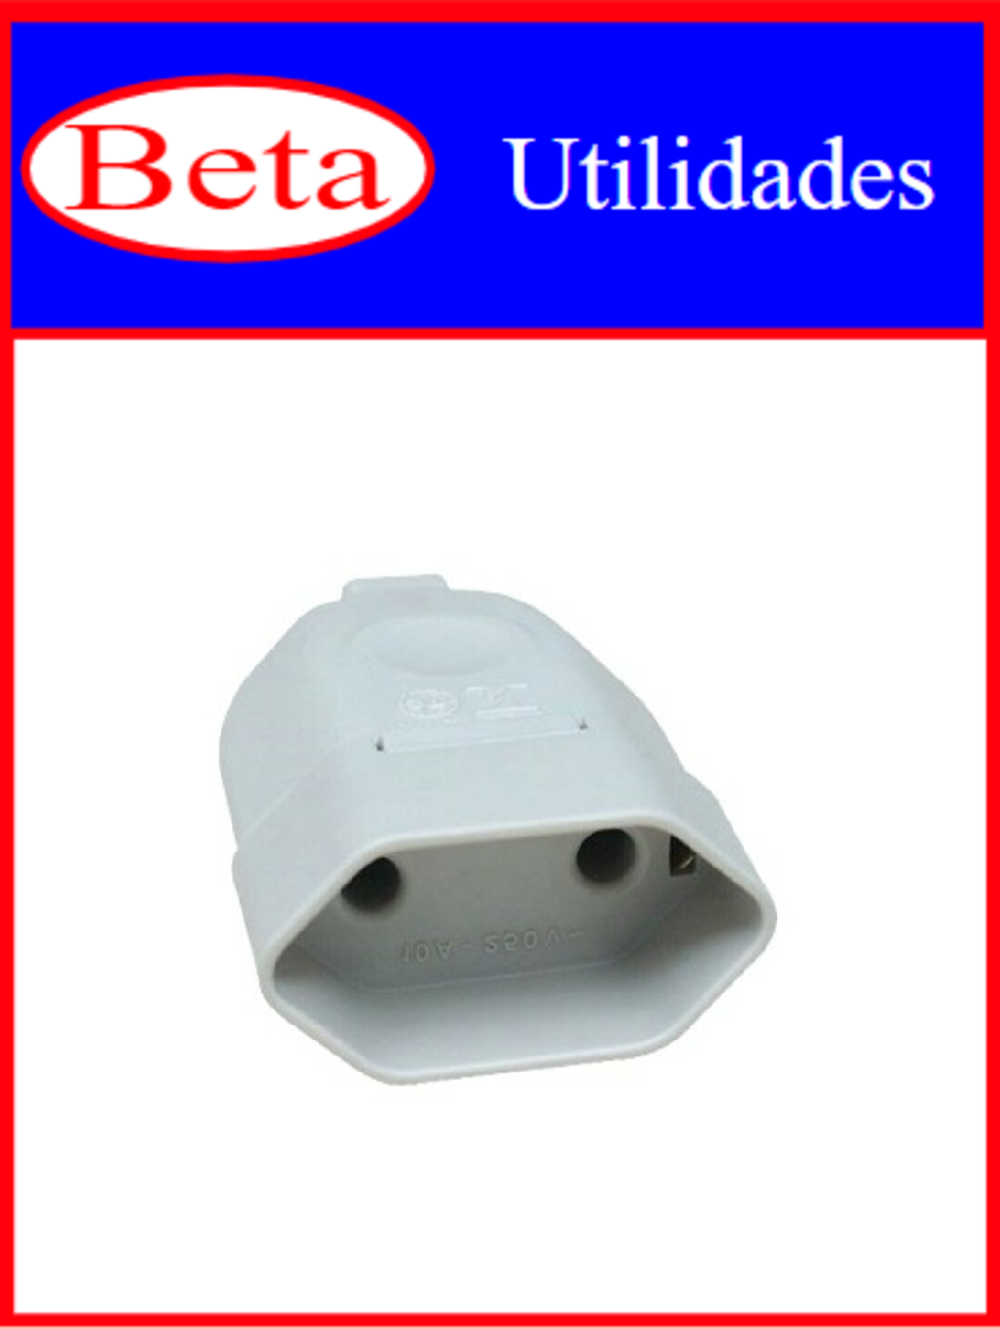 7898021400267 - BETA UTILIDADES PINO FEMEA ESPECIAL